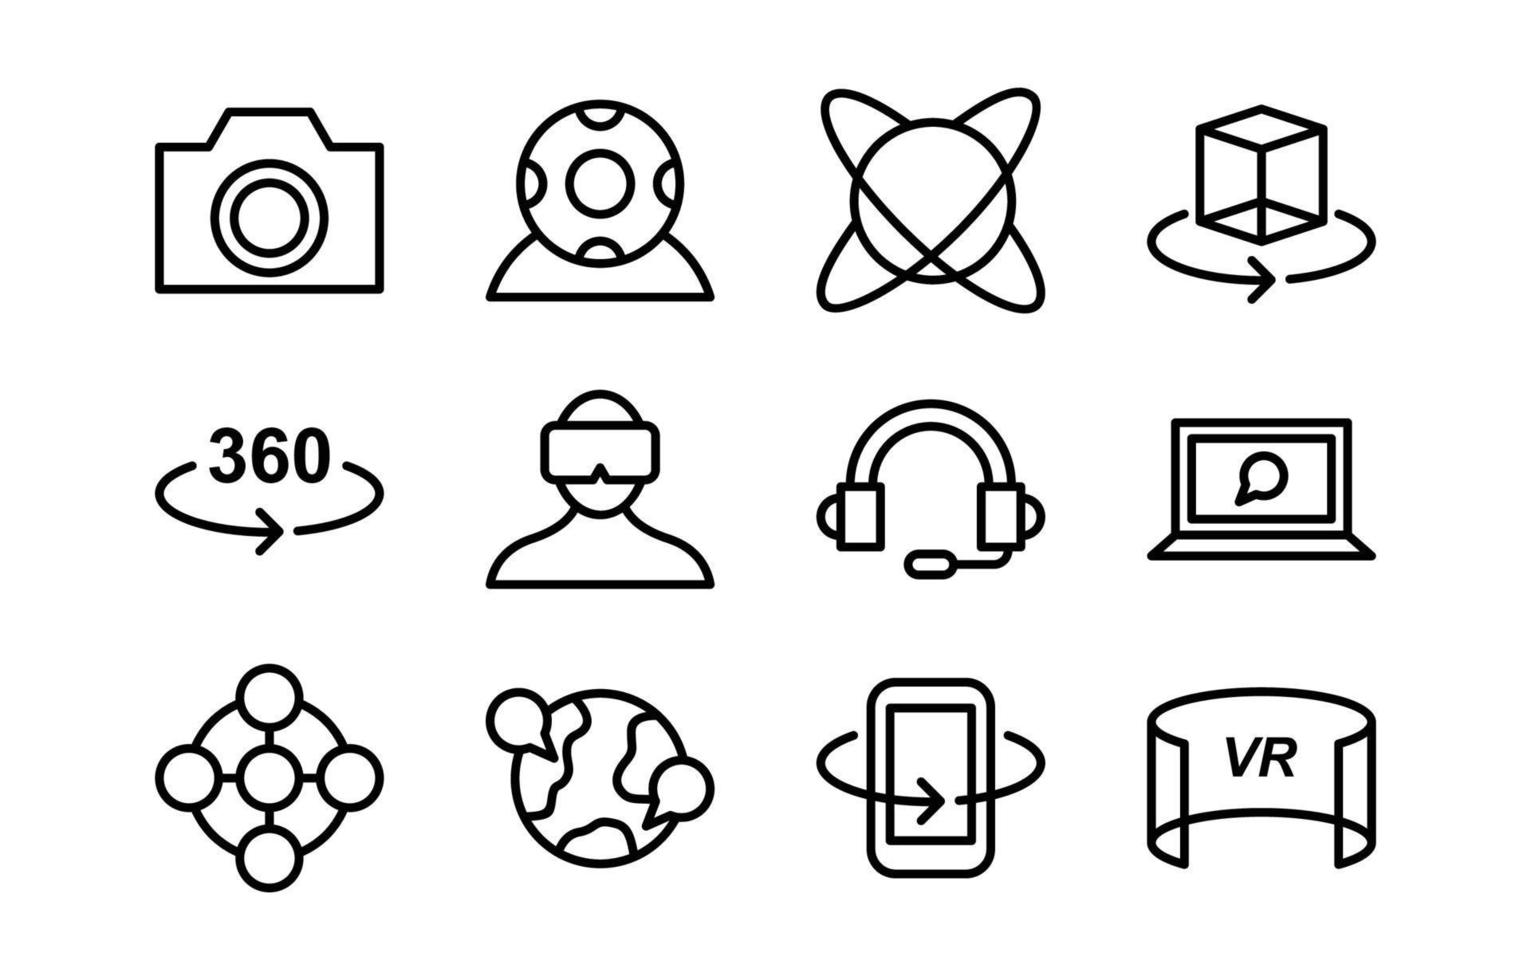 colección de iconos de contorno simple de tecnología virtual vector